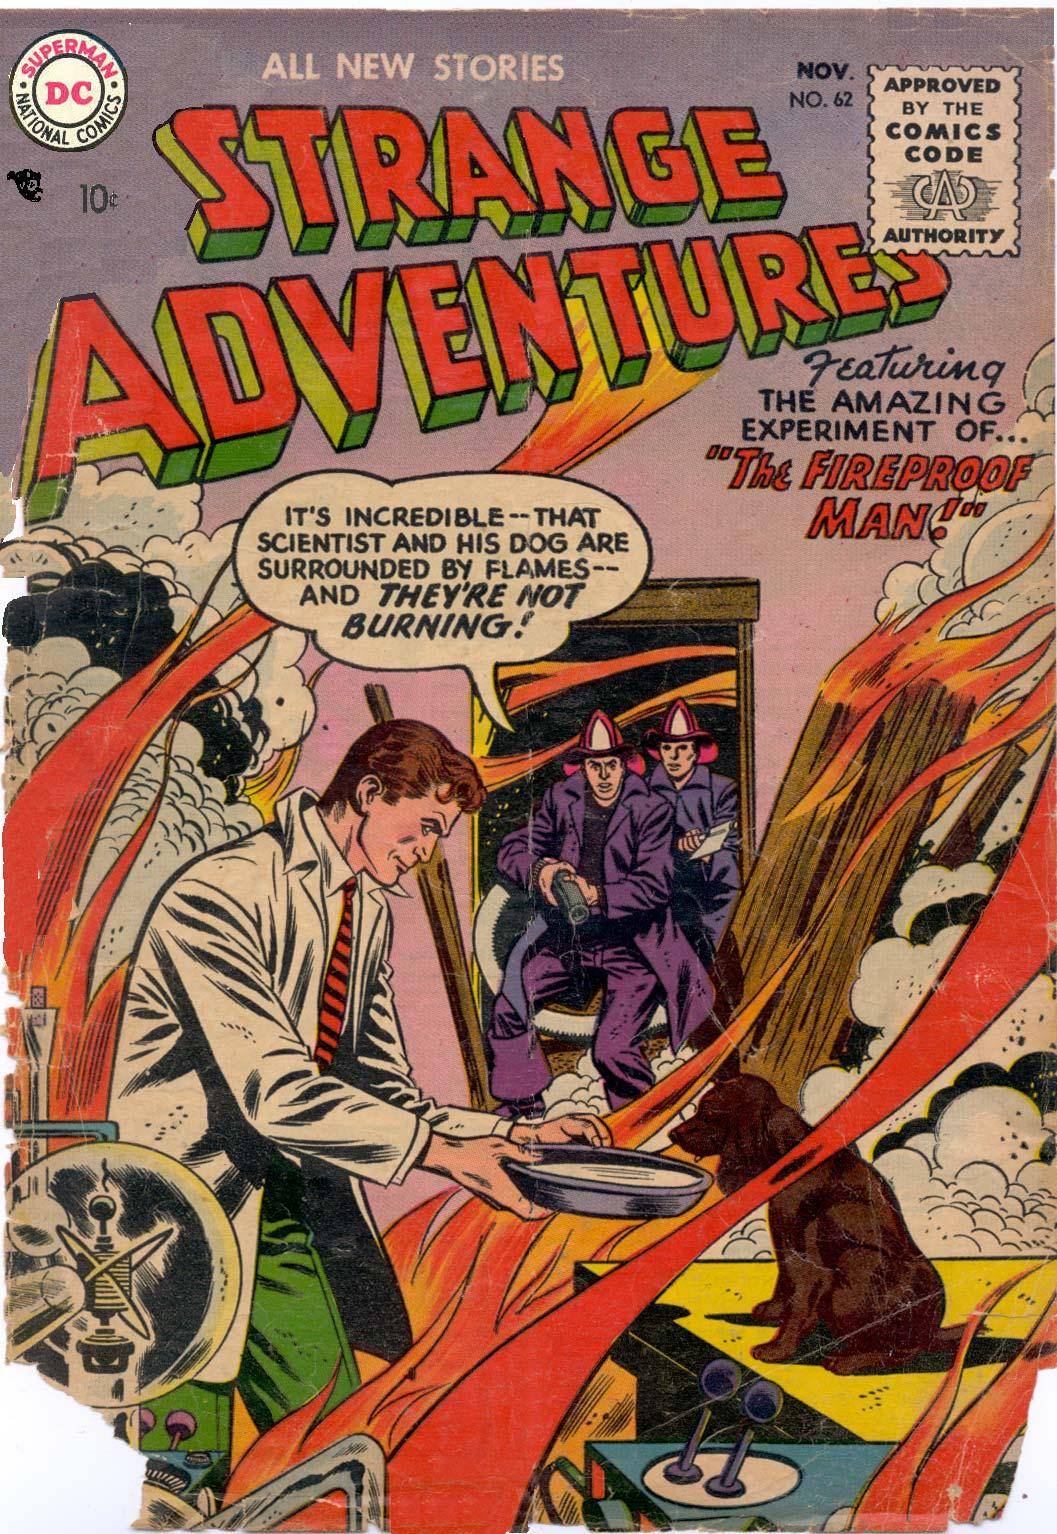 For Horby Strange Adventures v1 062 1955 cbr